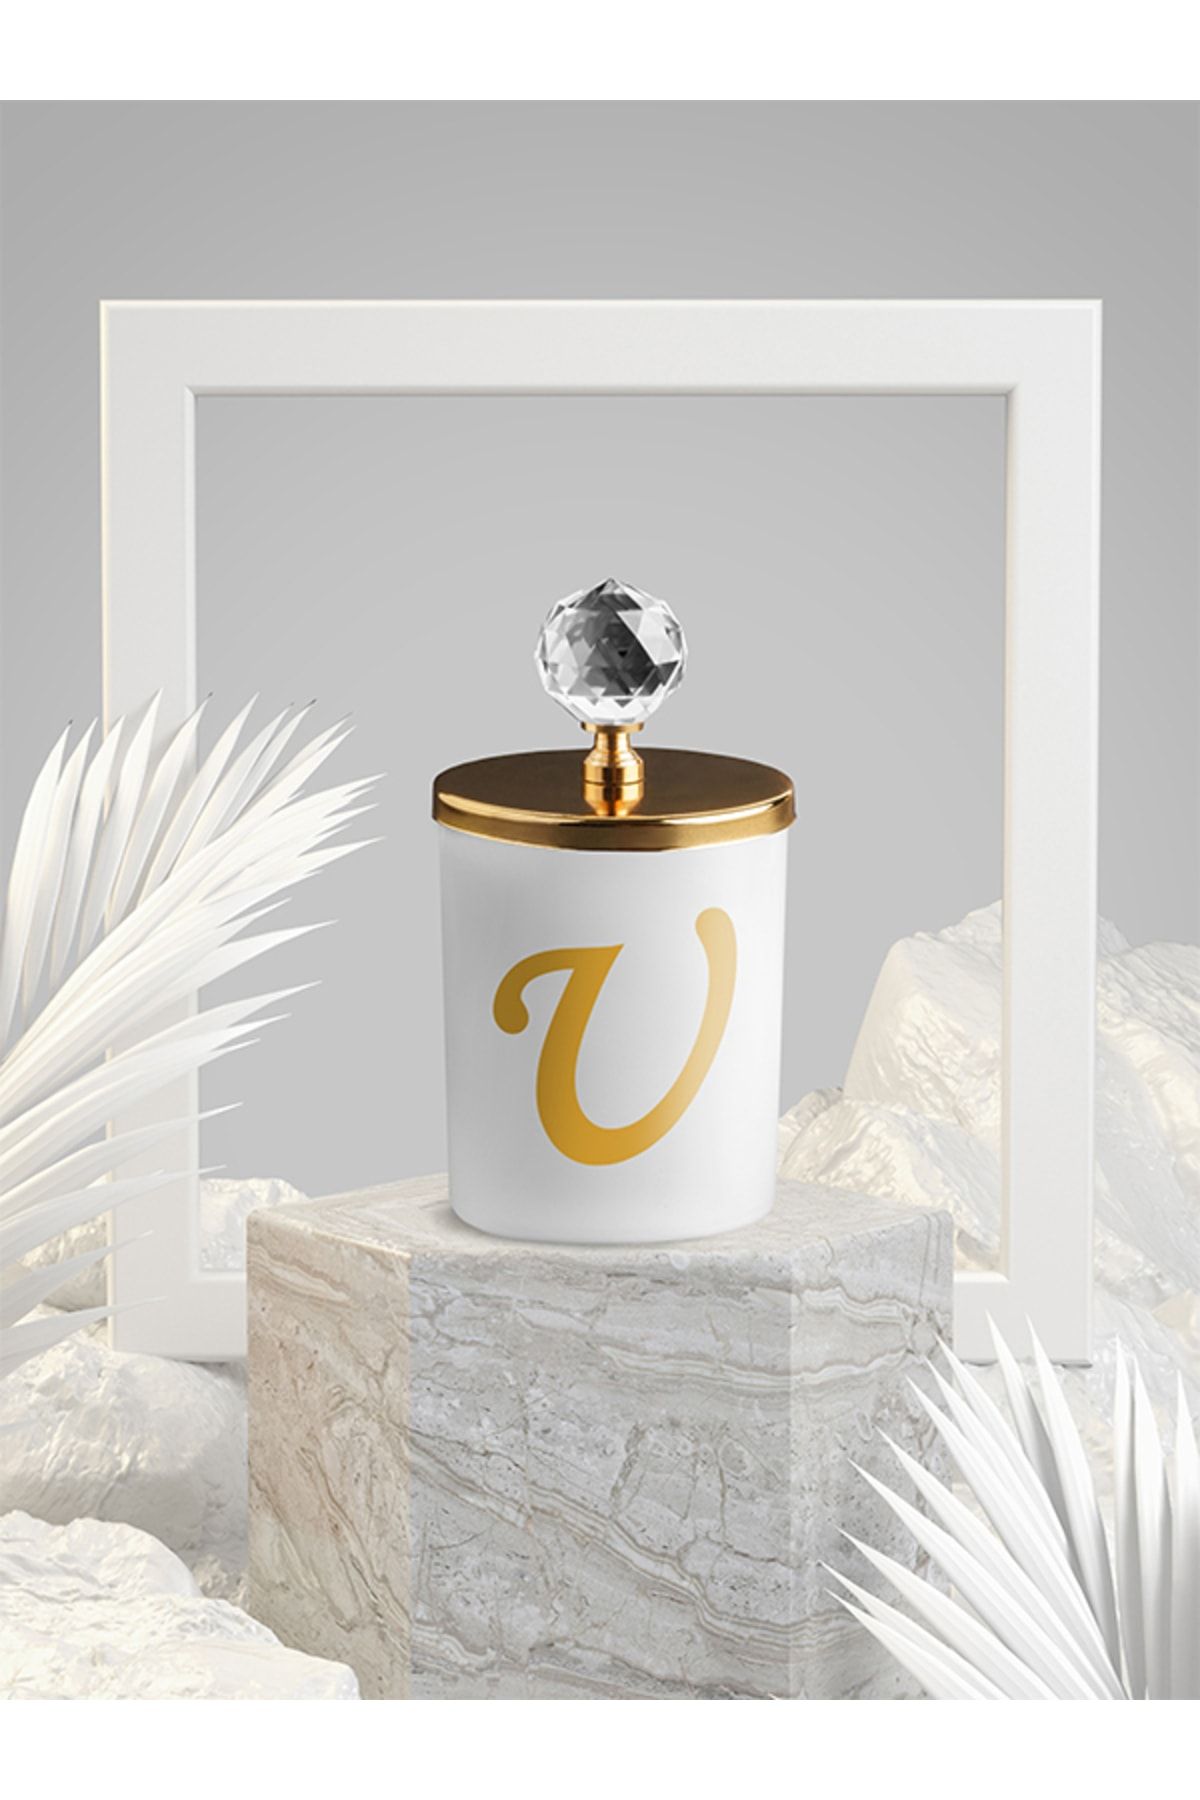 Tiem Concept Özel Tasarım U Harfli Vanilya Kokulu Gold Kristal Tepelikli Beyaz Bardak Mum